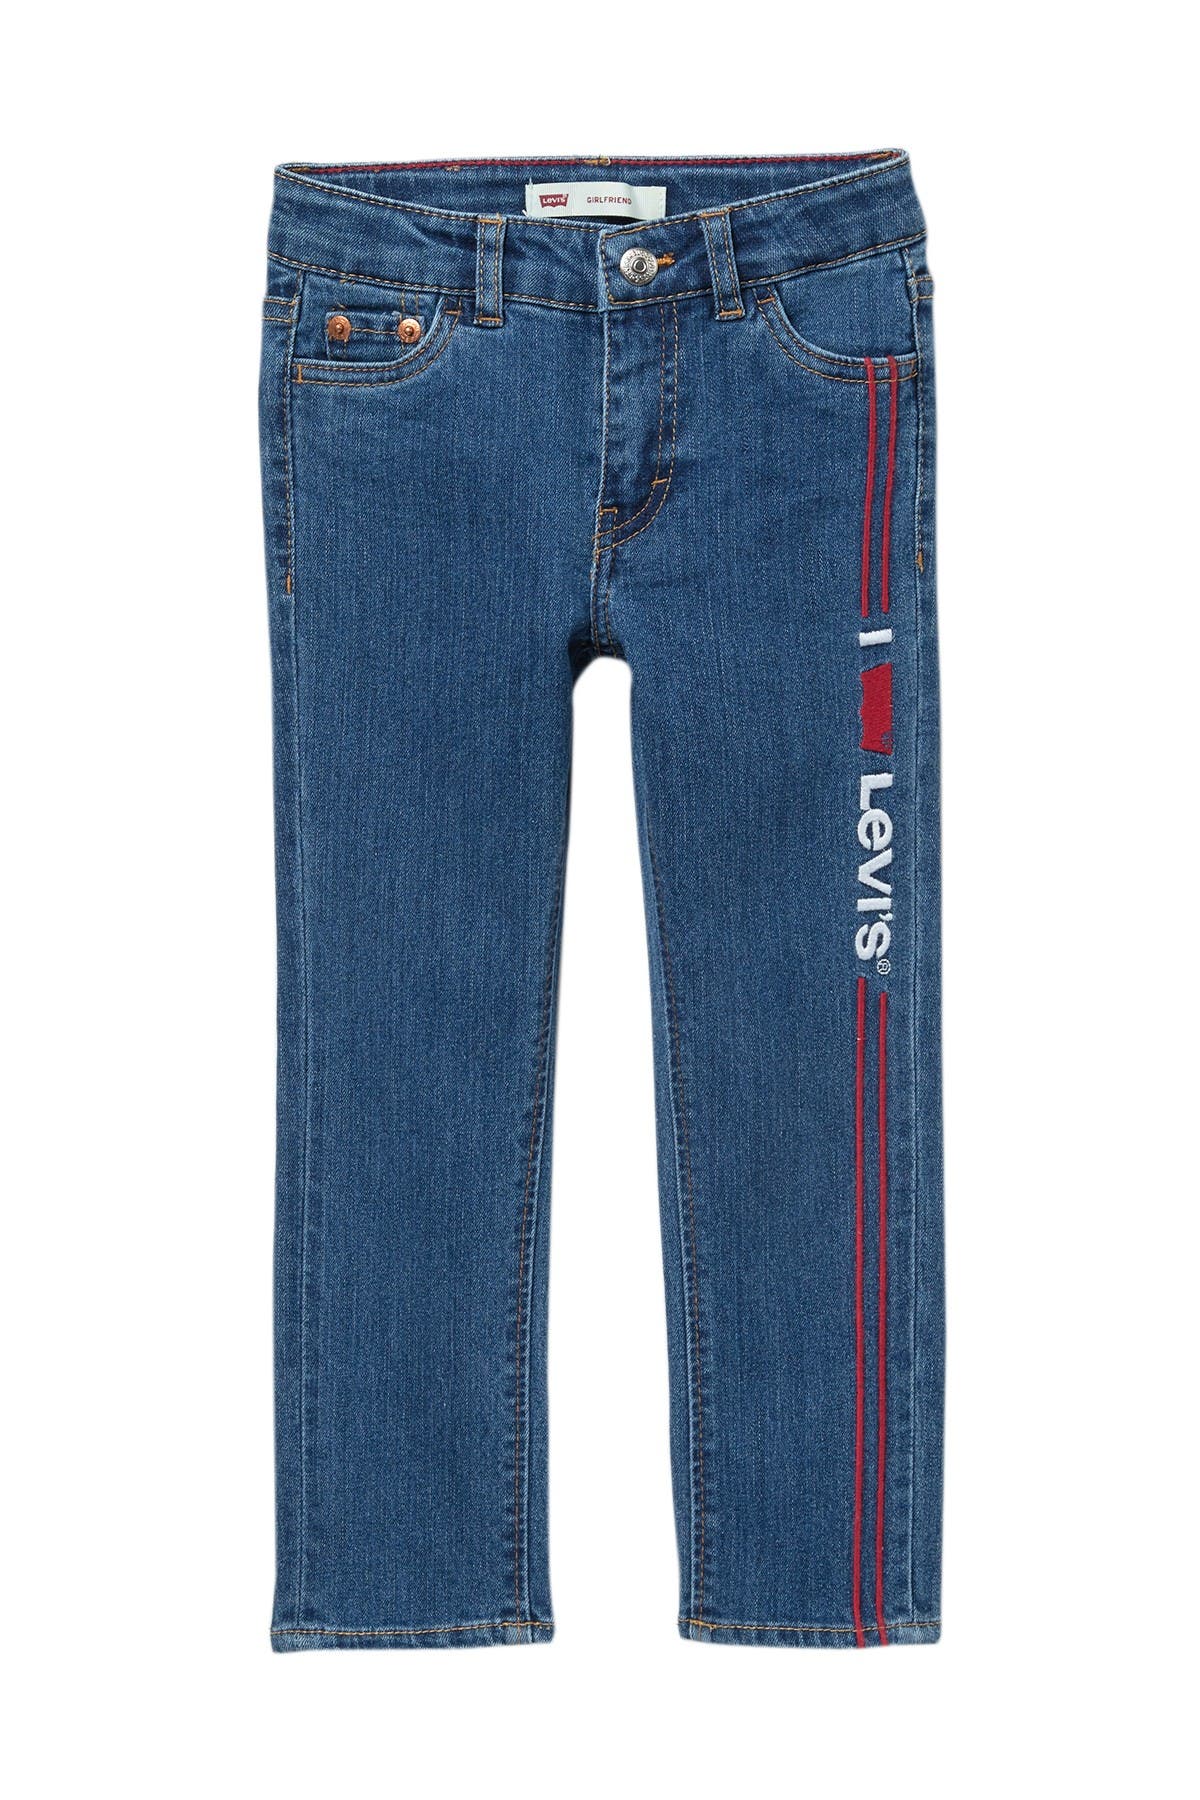 levi's girlfriend jeans